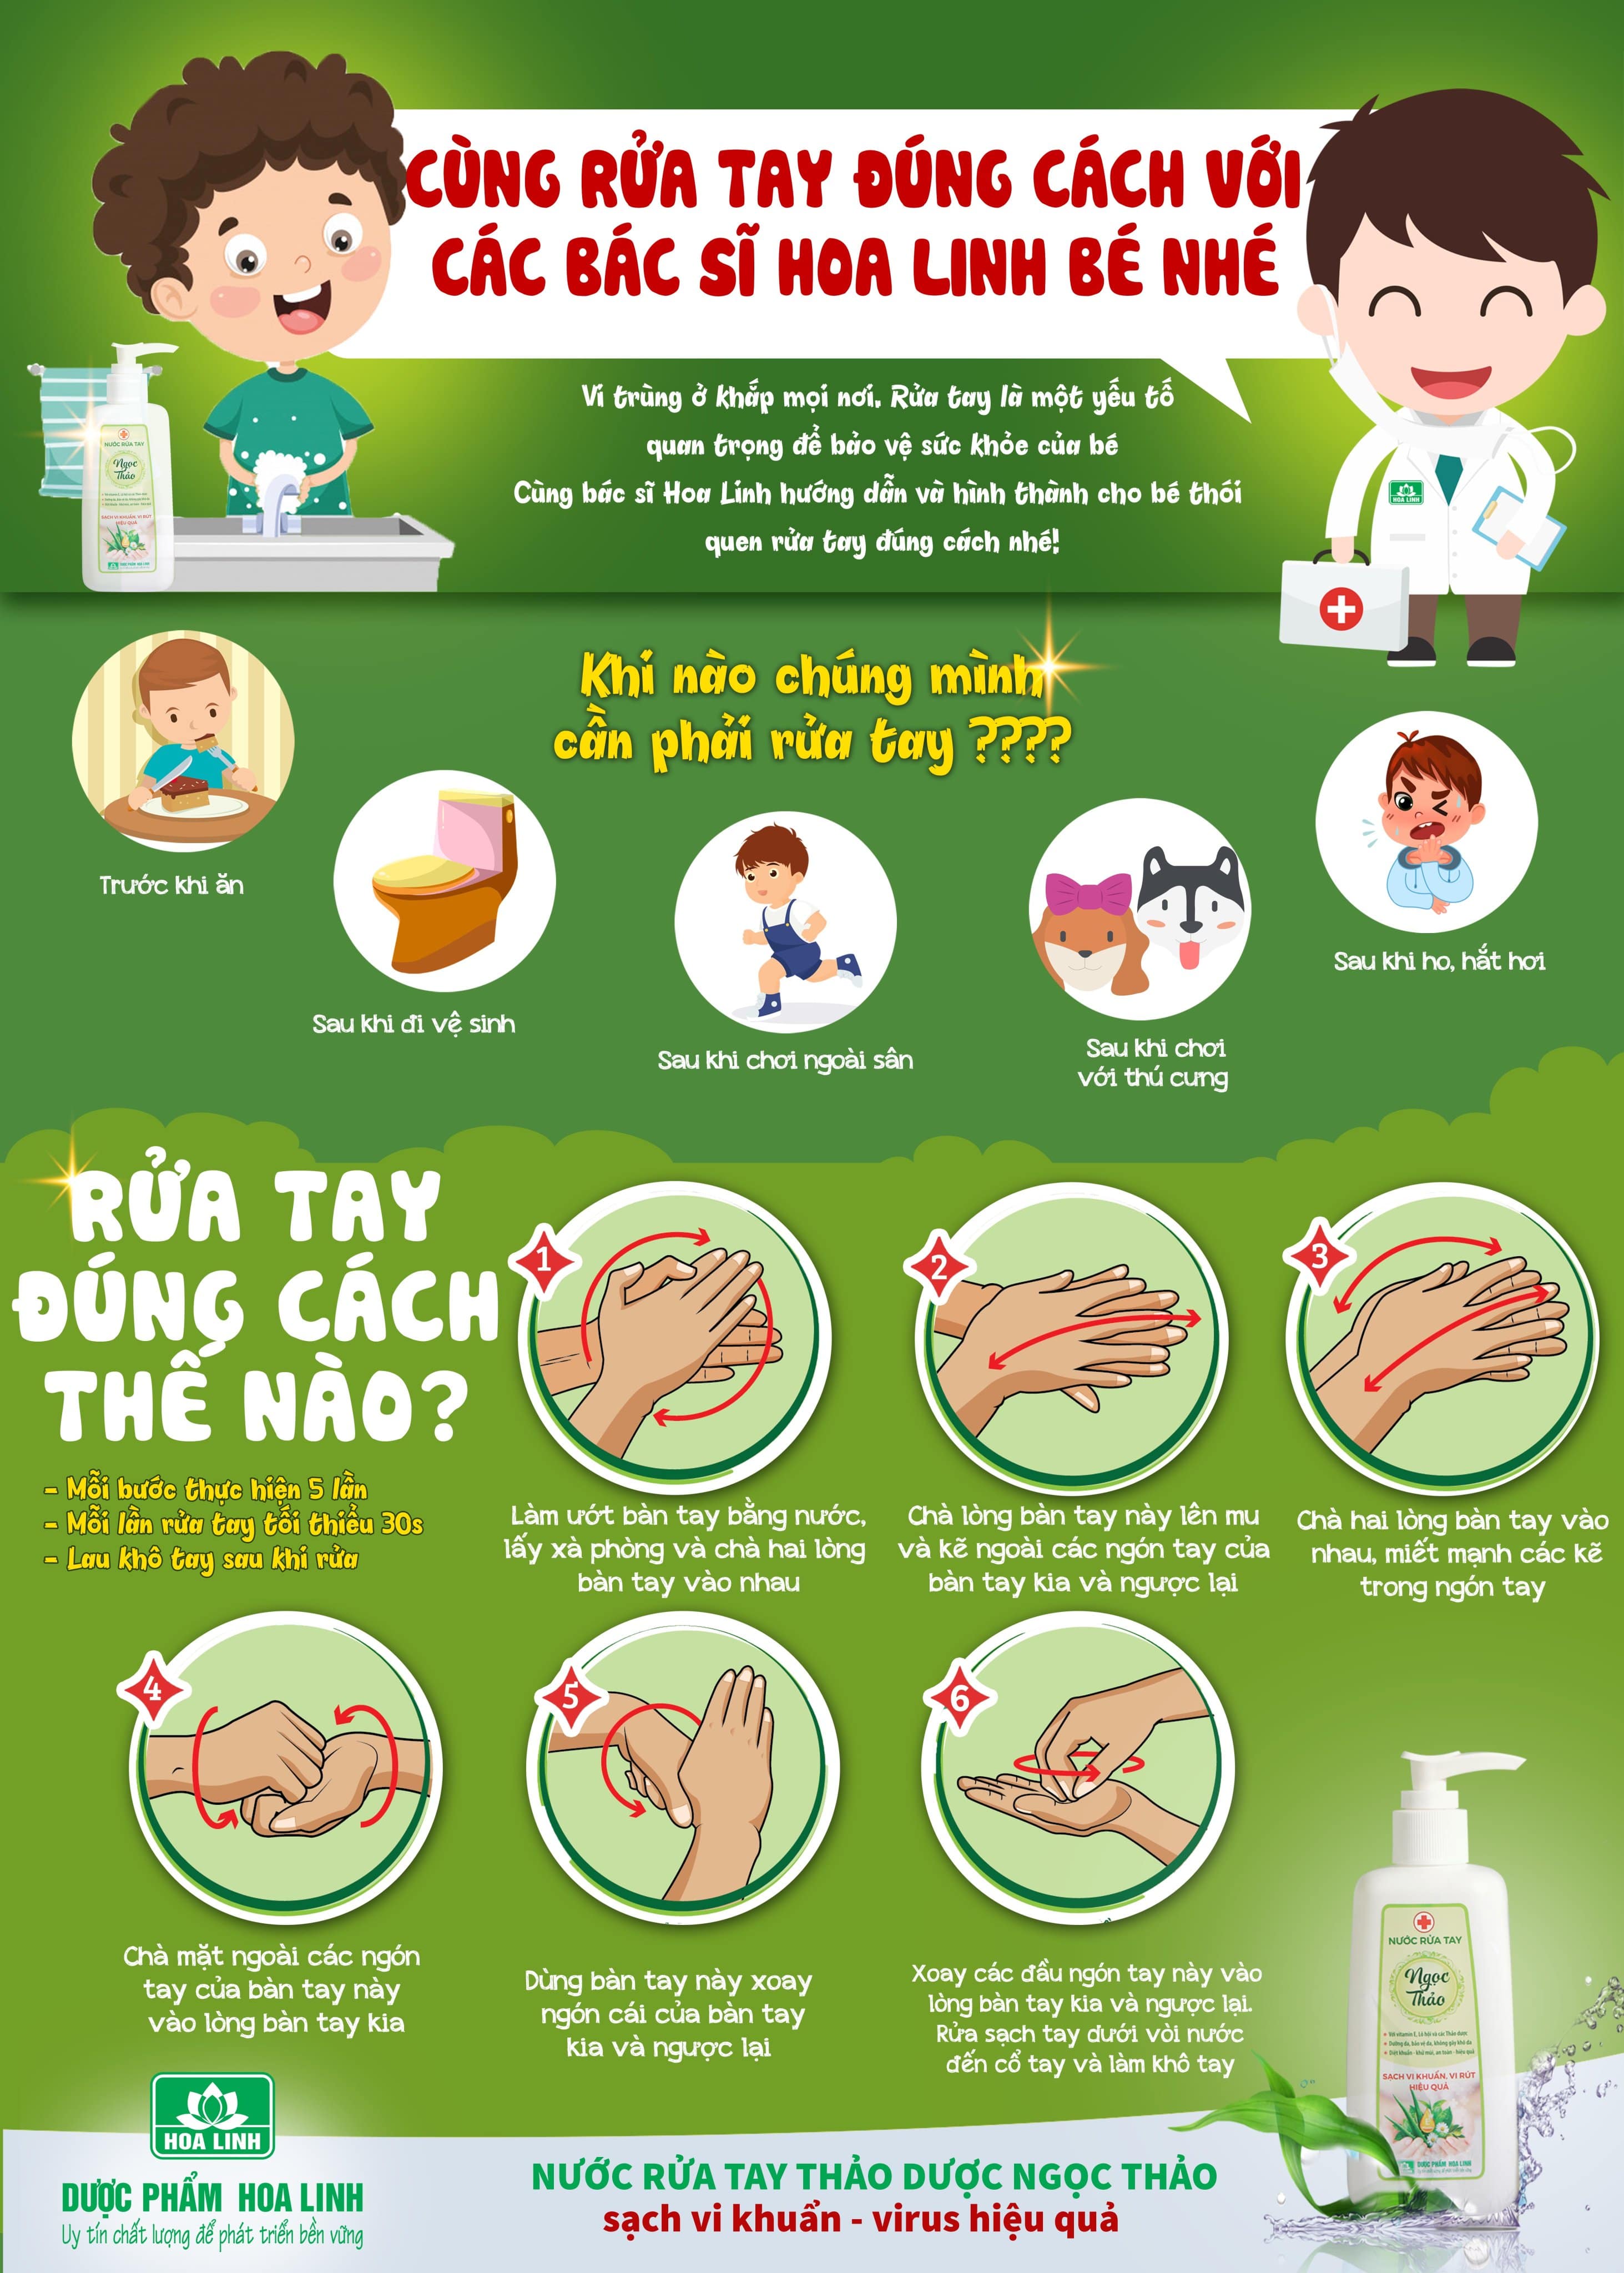 Poster hướng dẫn về các bước rửa tay đúng cách được phát tặng cho trường học